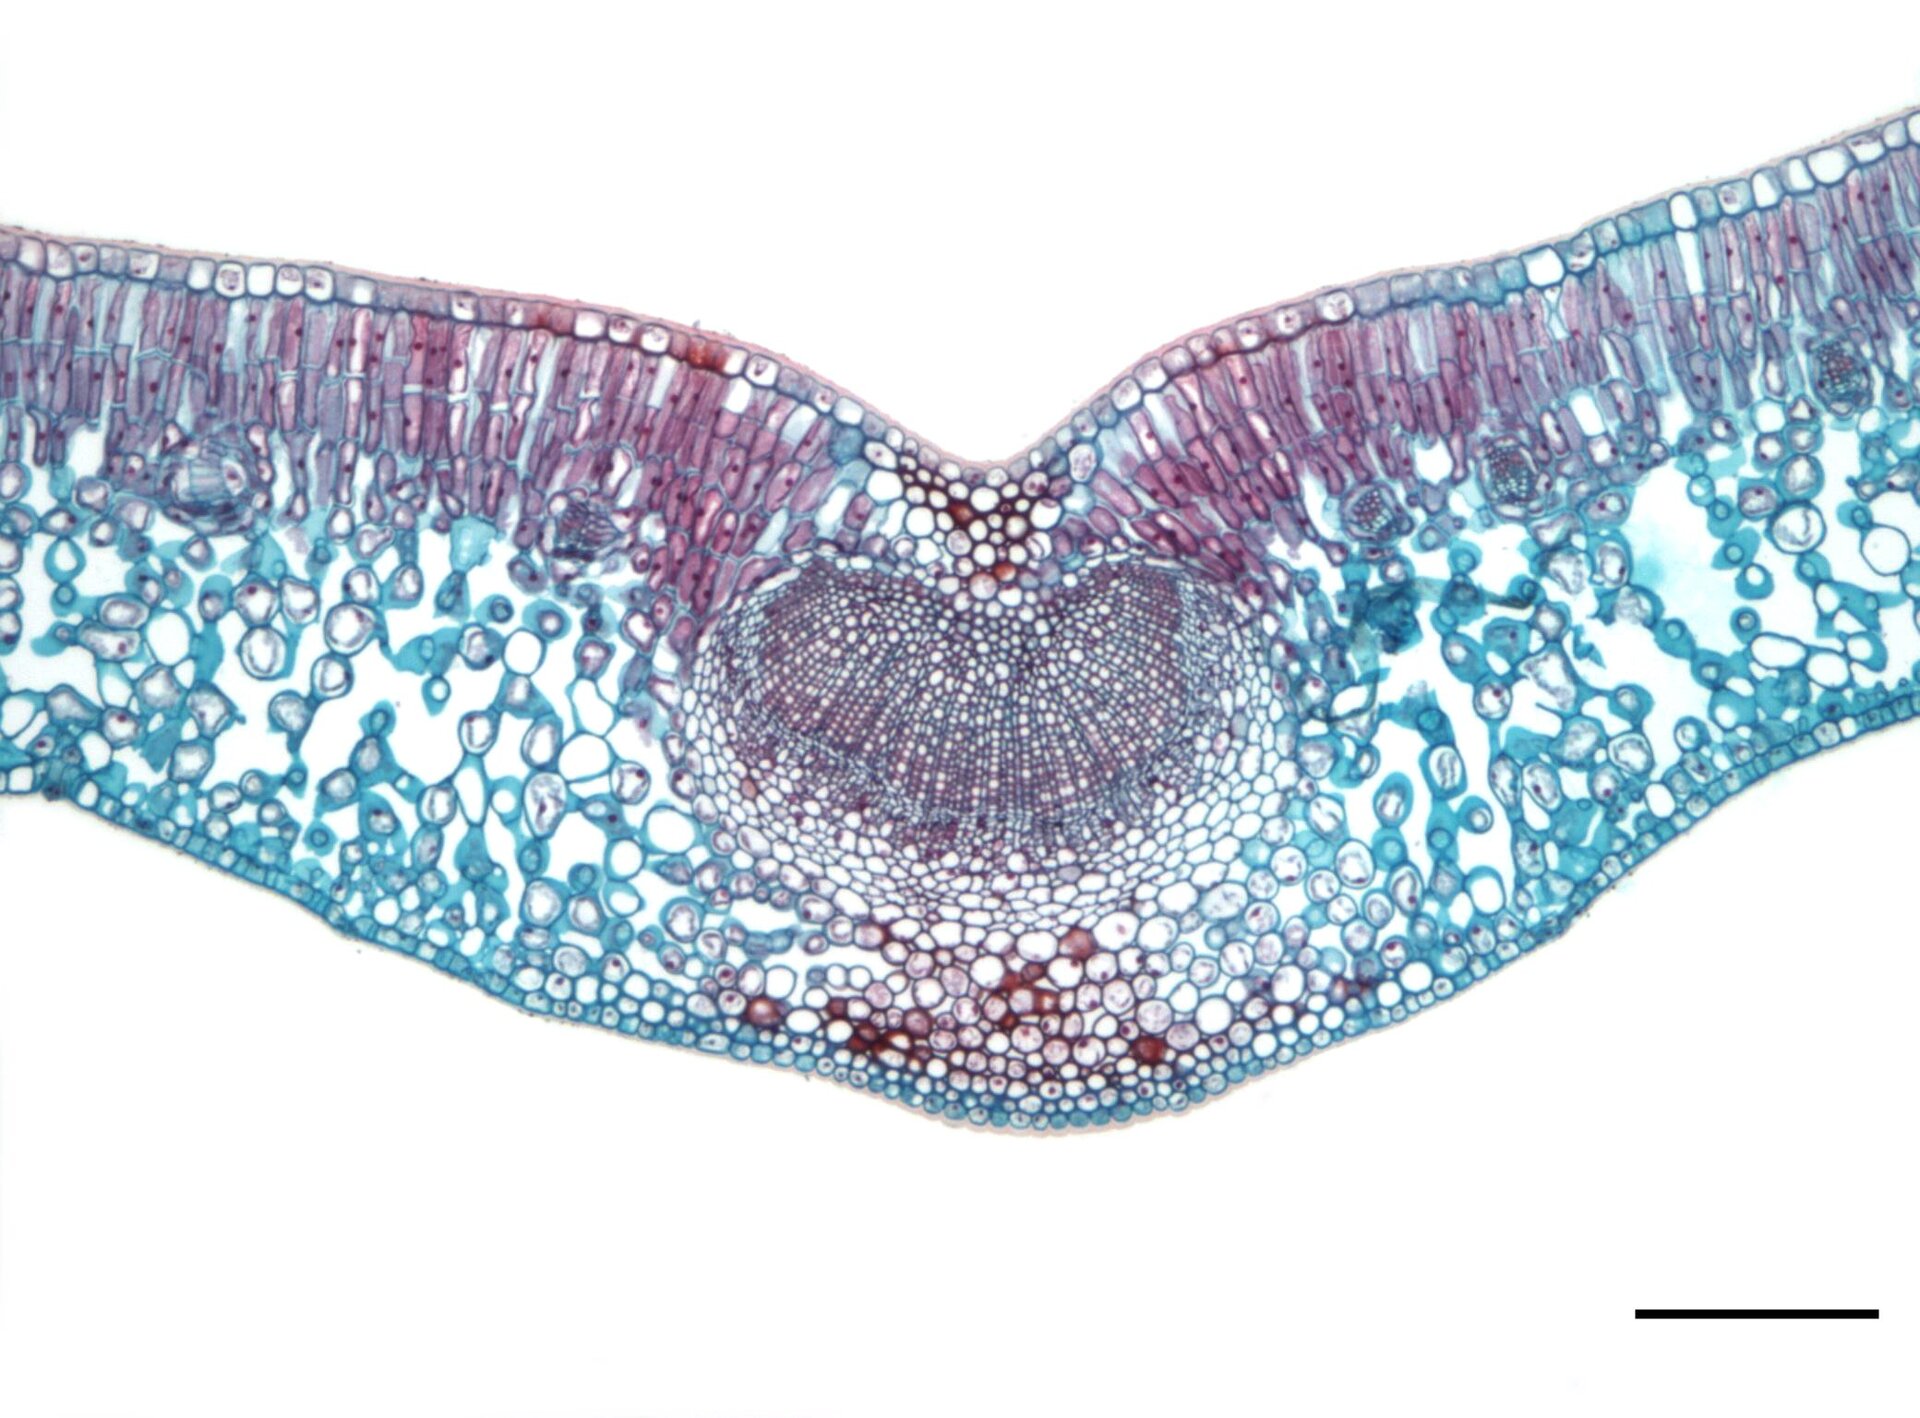 Fotografia mikroskopowa przedstawia przekrój przez liść. Różne tkanki są wybarwione na fioletowo, niebiesko i czerwono.